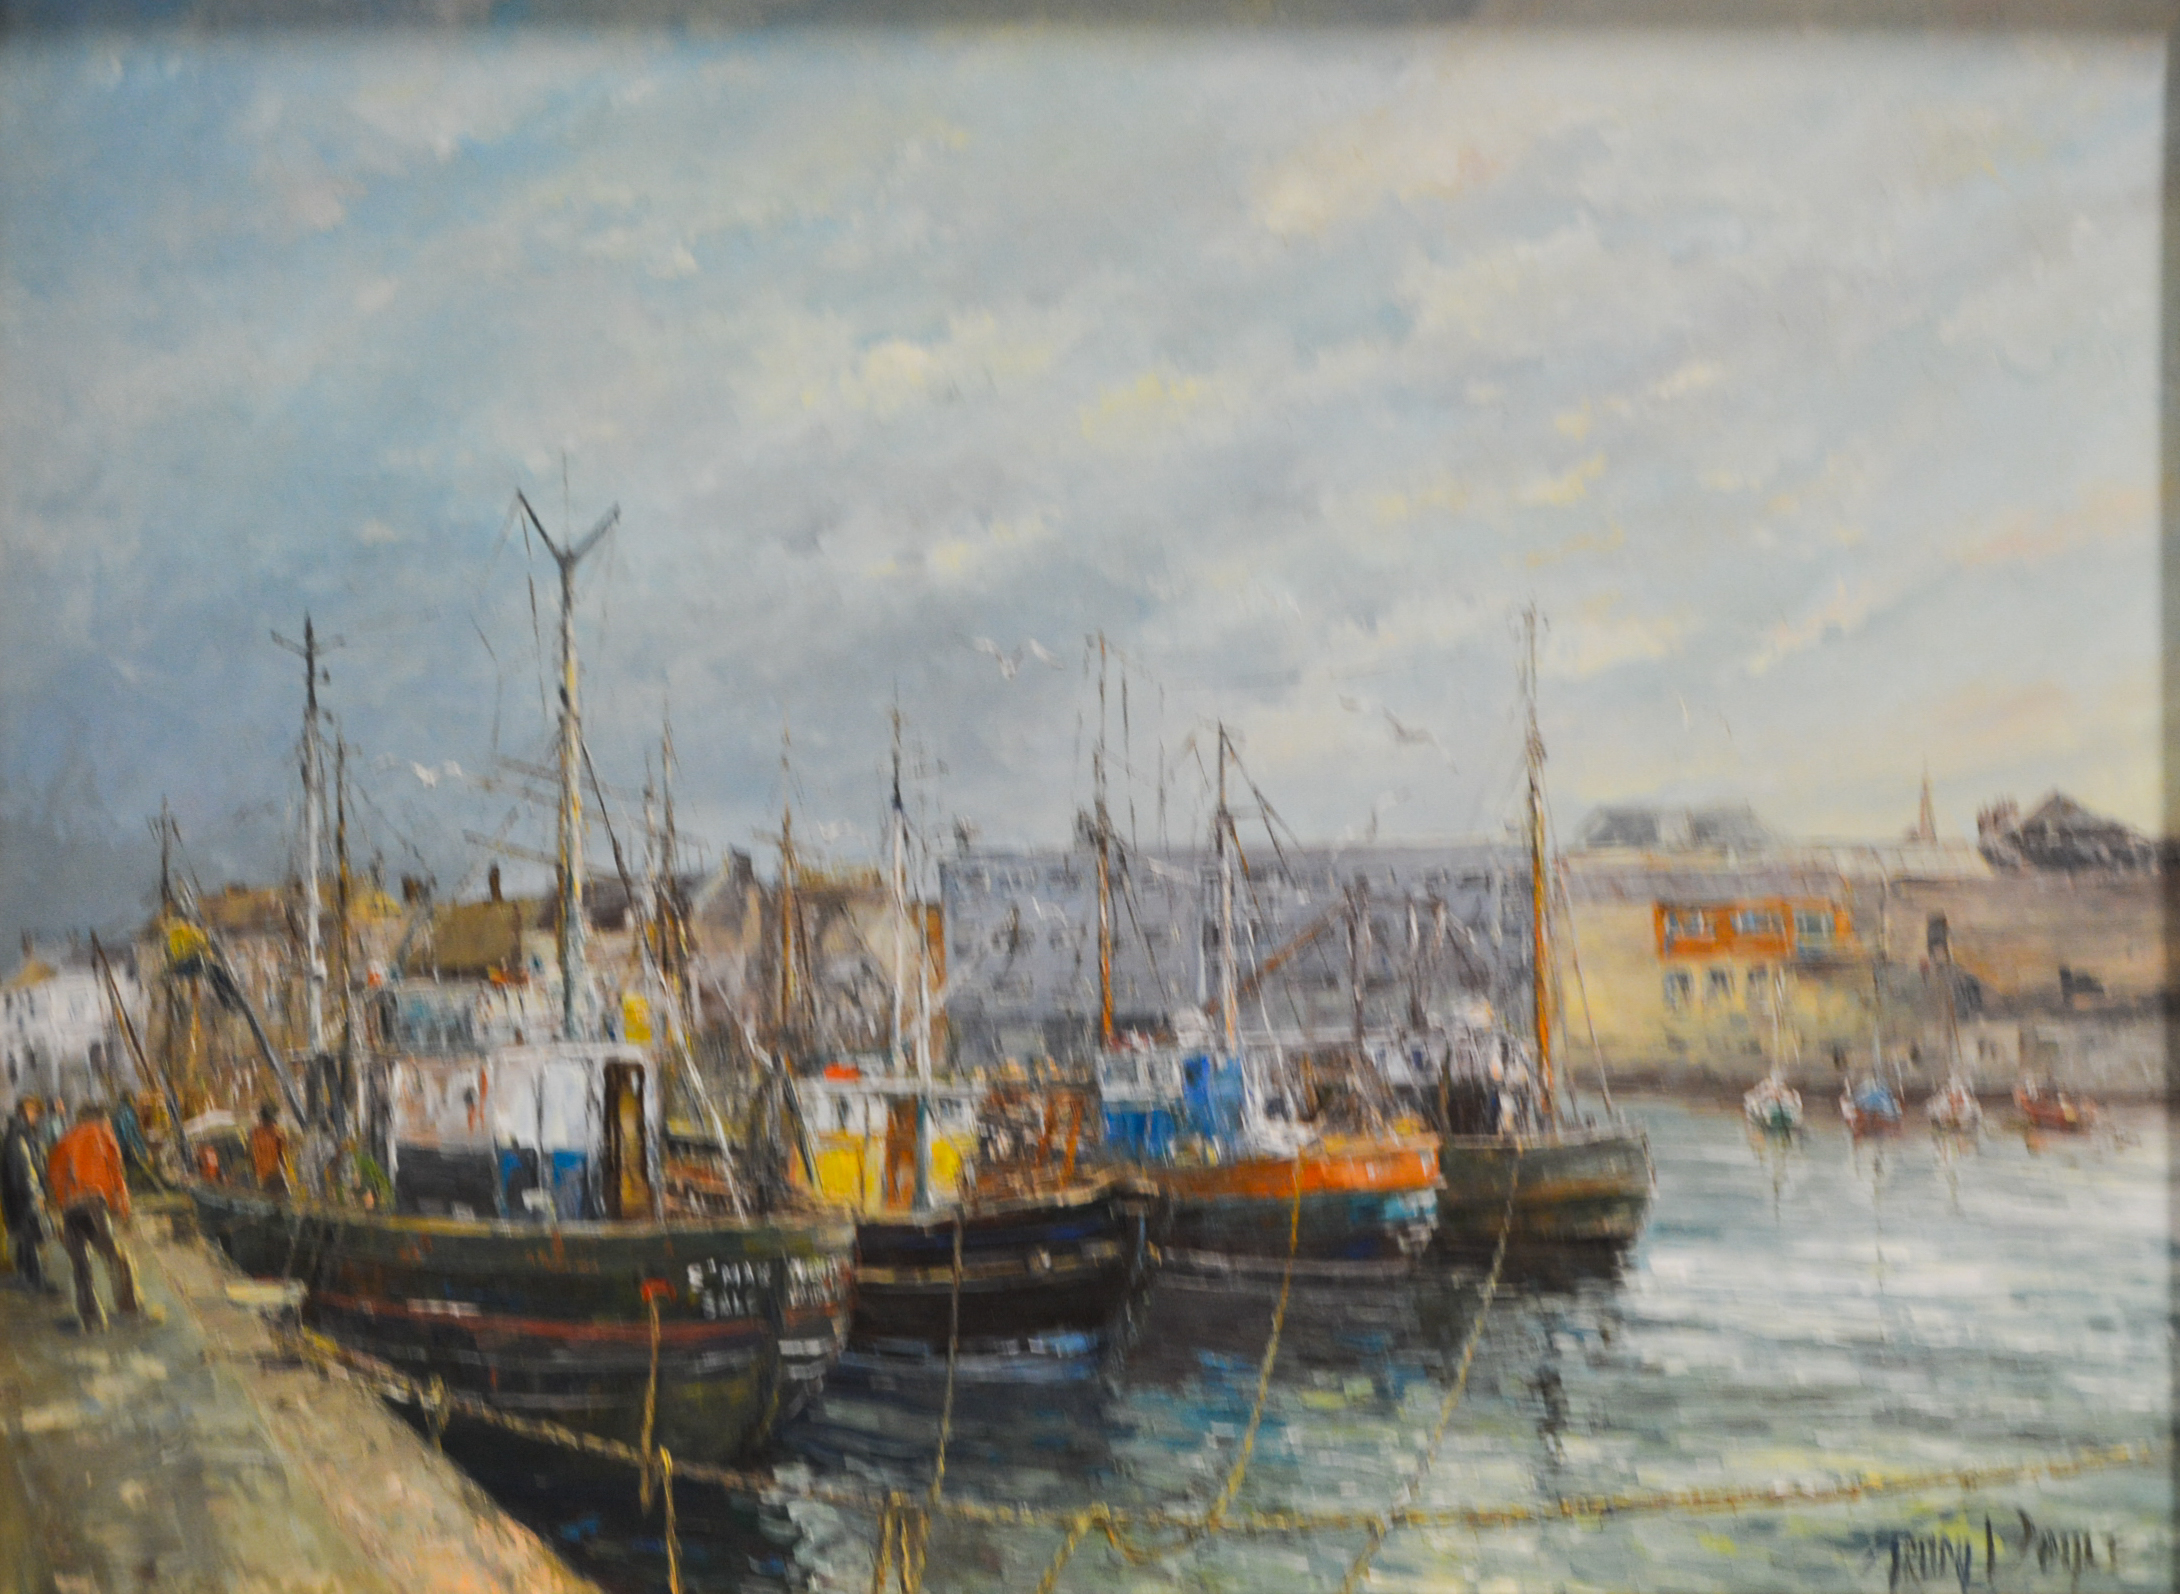 Trudy Doyle "Alongside The Barbican" (Plymouth Devon) oil on board 43cm x 60cm,